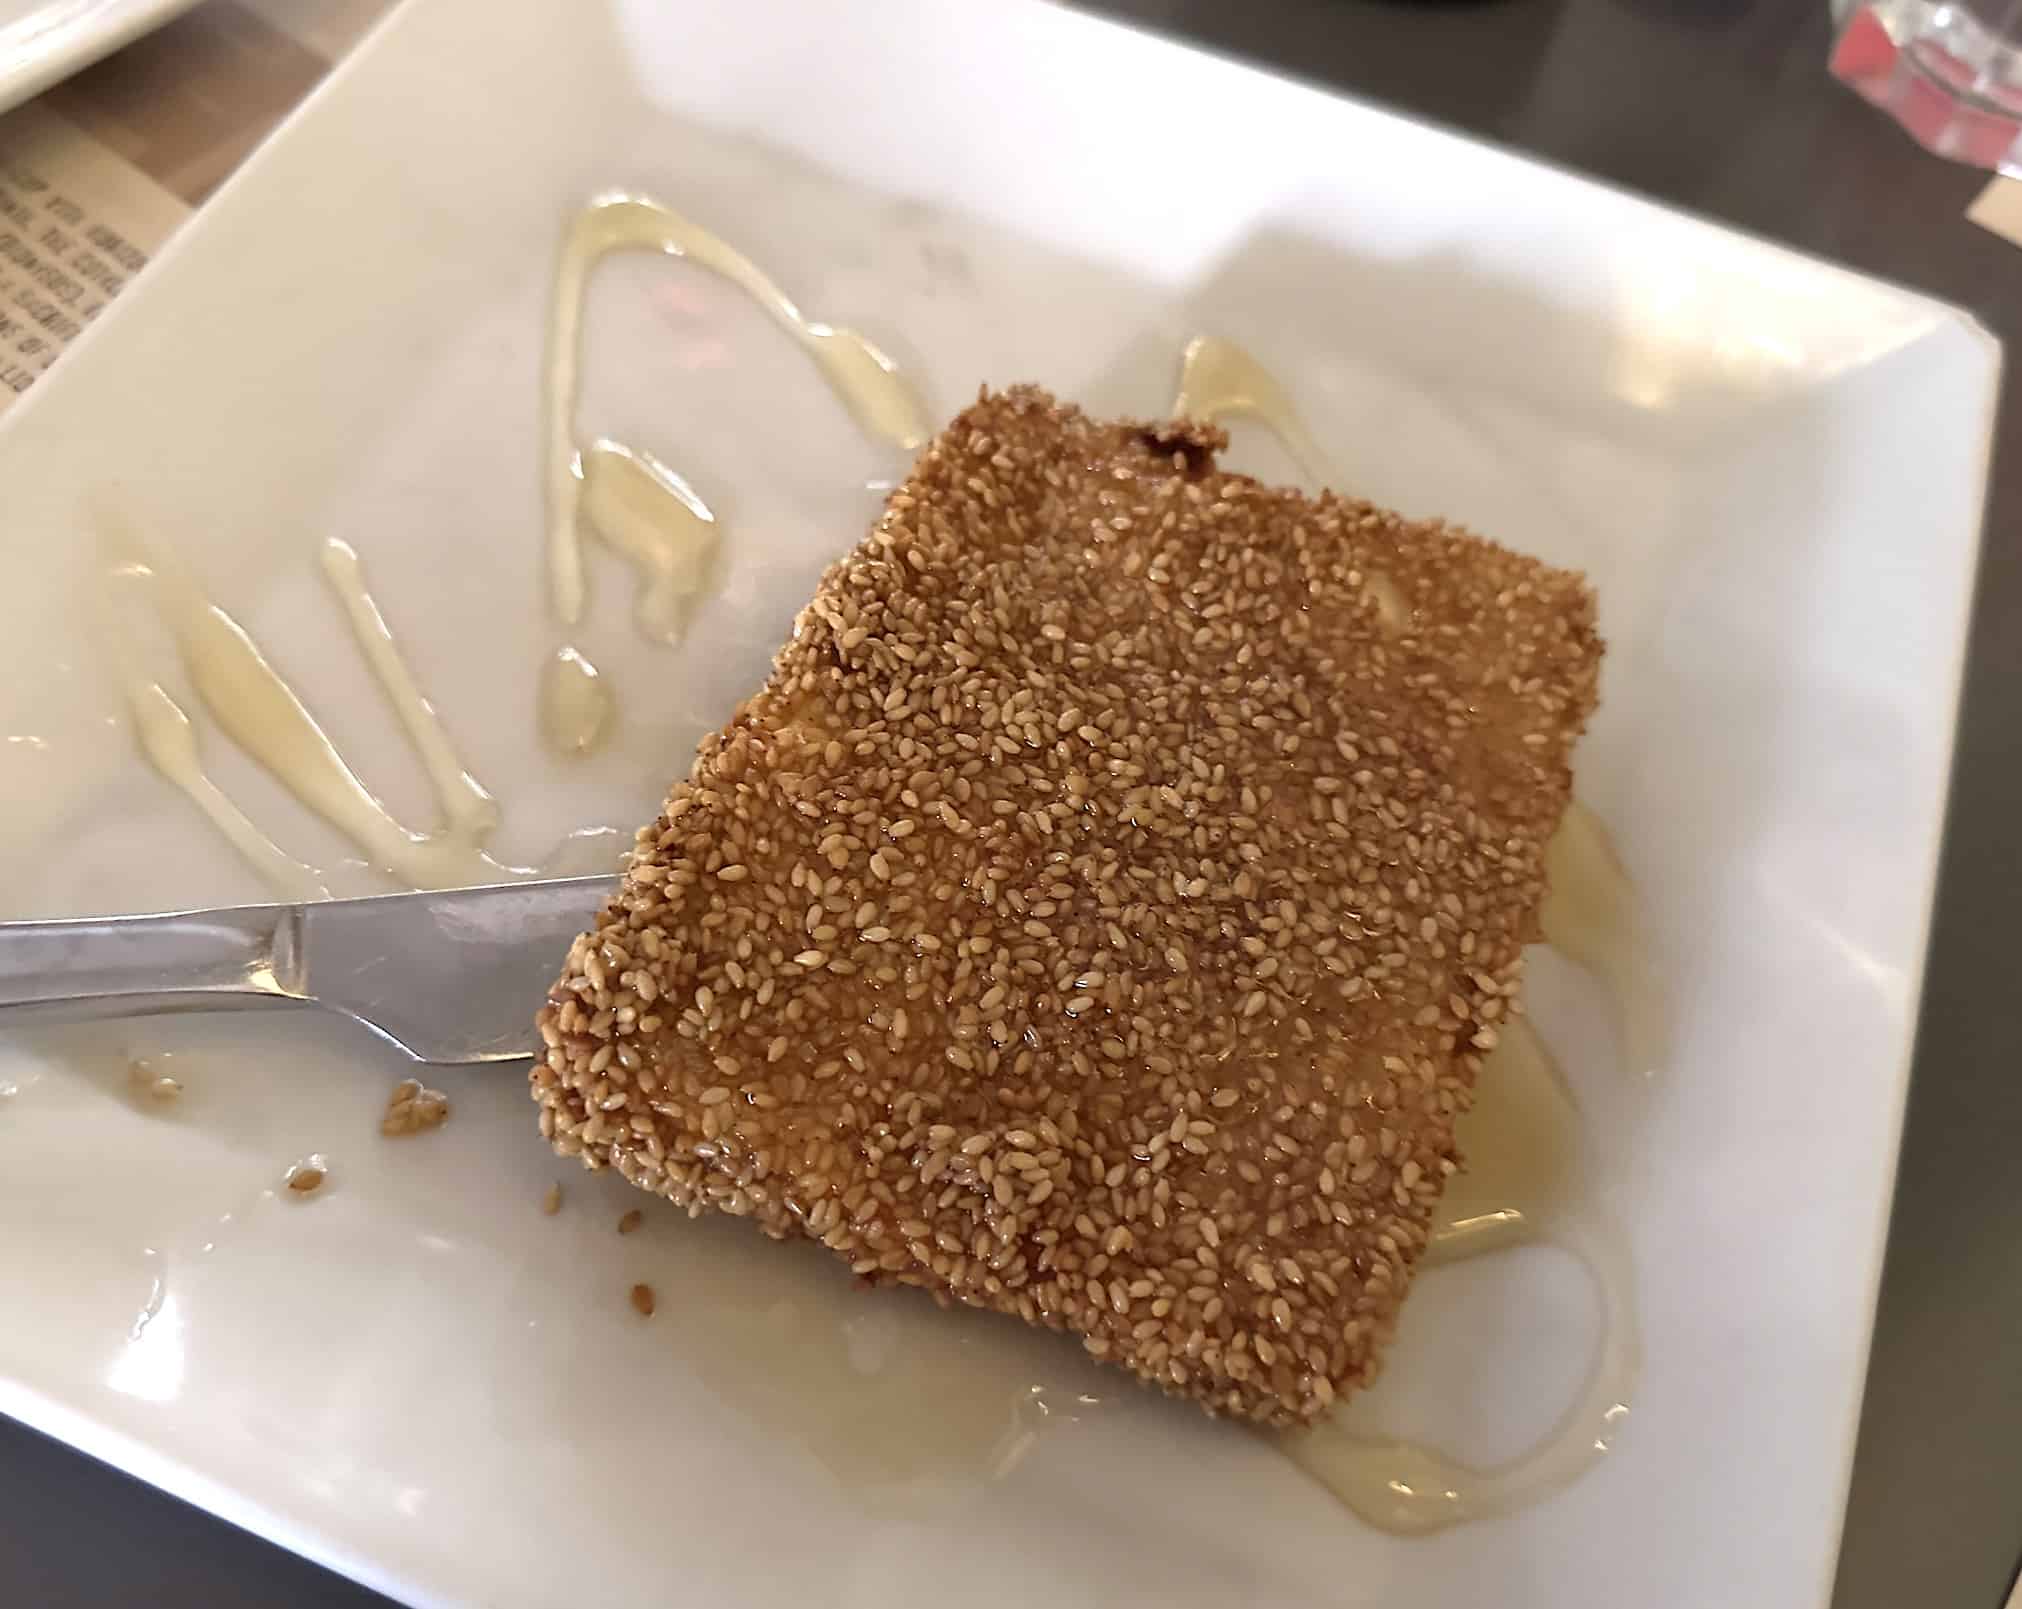 Sesame encrusted feta topped with honey at Kotili in Monastiraki, Athens, Greece